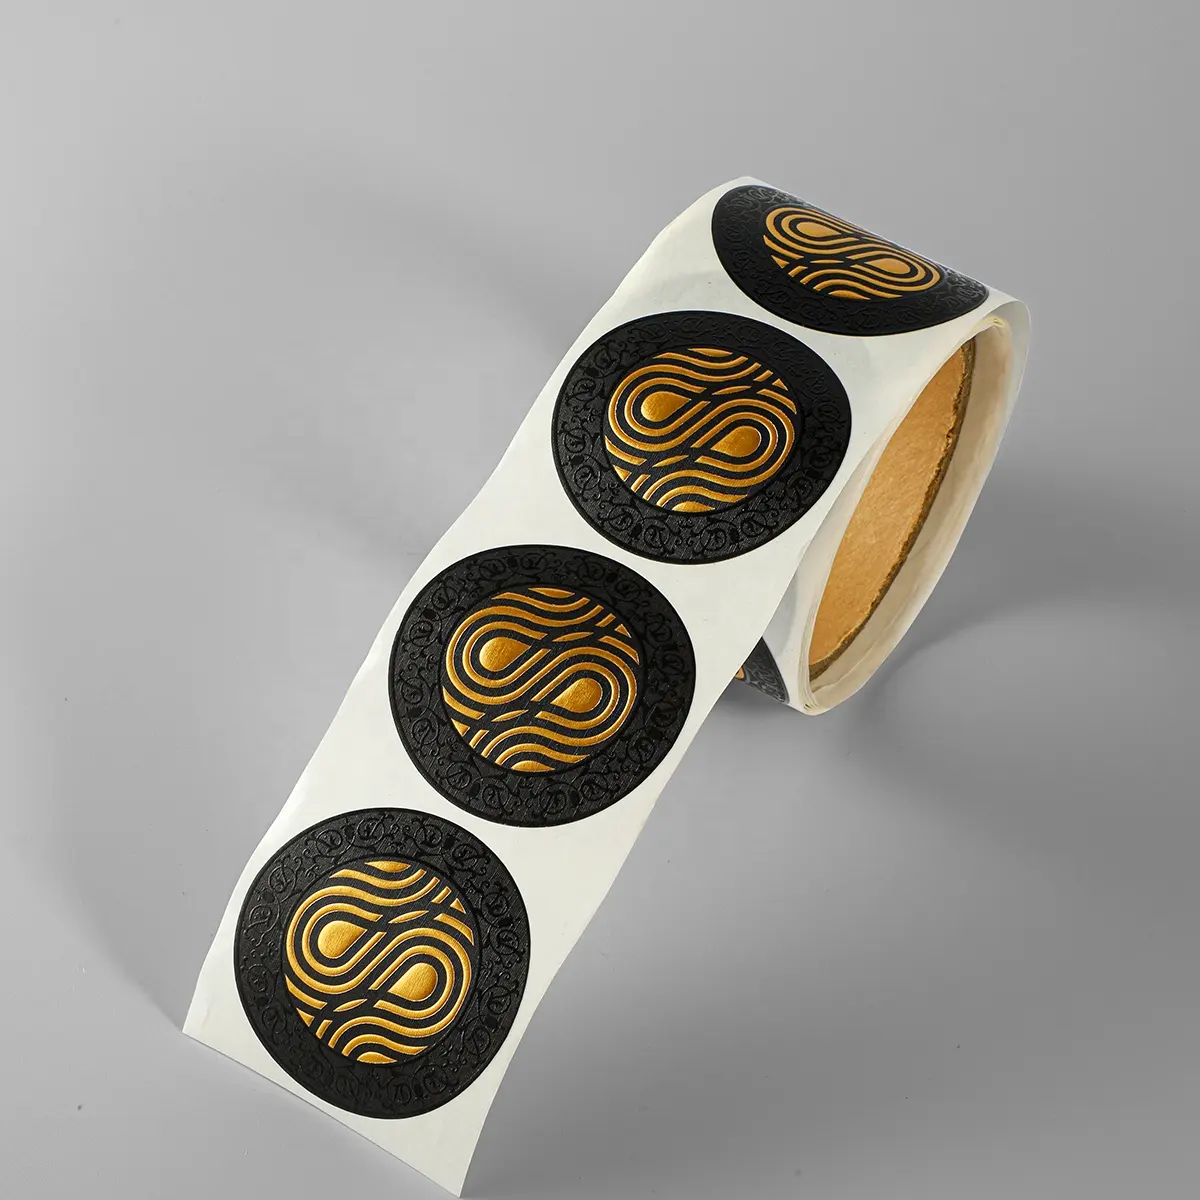 Rouleau d'autocollant personnalisé de luxe en papier gaufré avec feuille d'or pour cadeau, logo de marque, adhésif transparent, rond